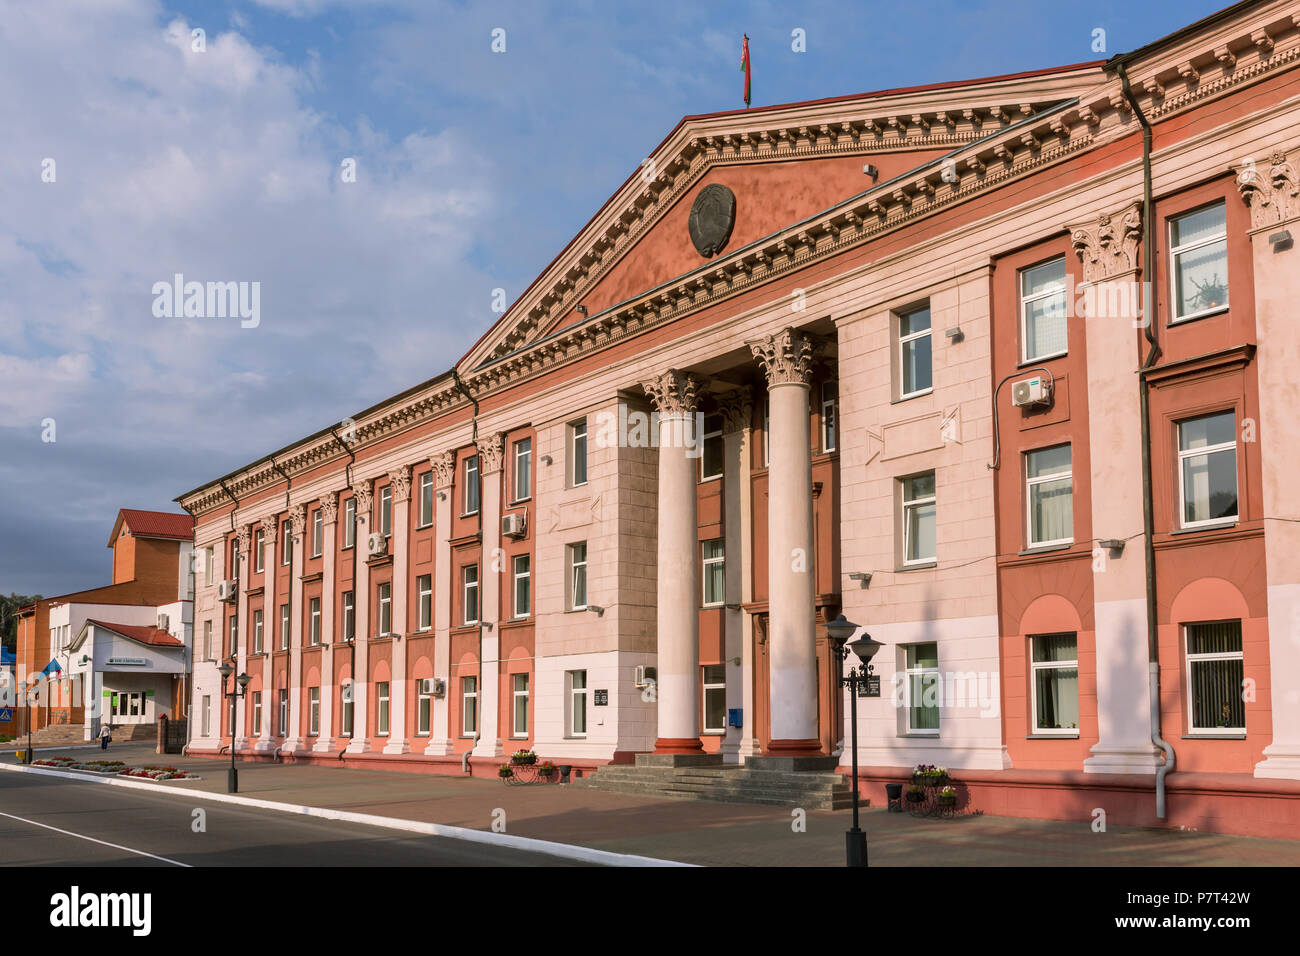 Mozyr, Bélarus - 23 septembre 2017 : Ancien bâtiment administratif de l'architecture soviétique dans le sud de la Biélorussie, Mozyr. Banque D'Images